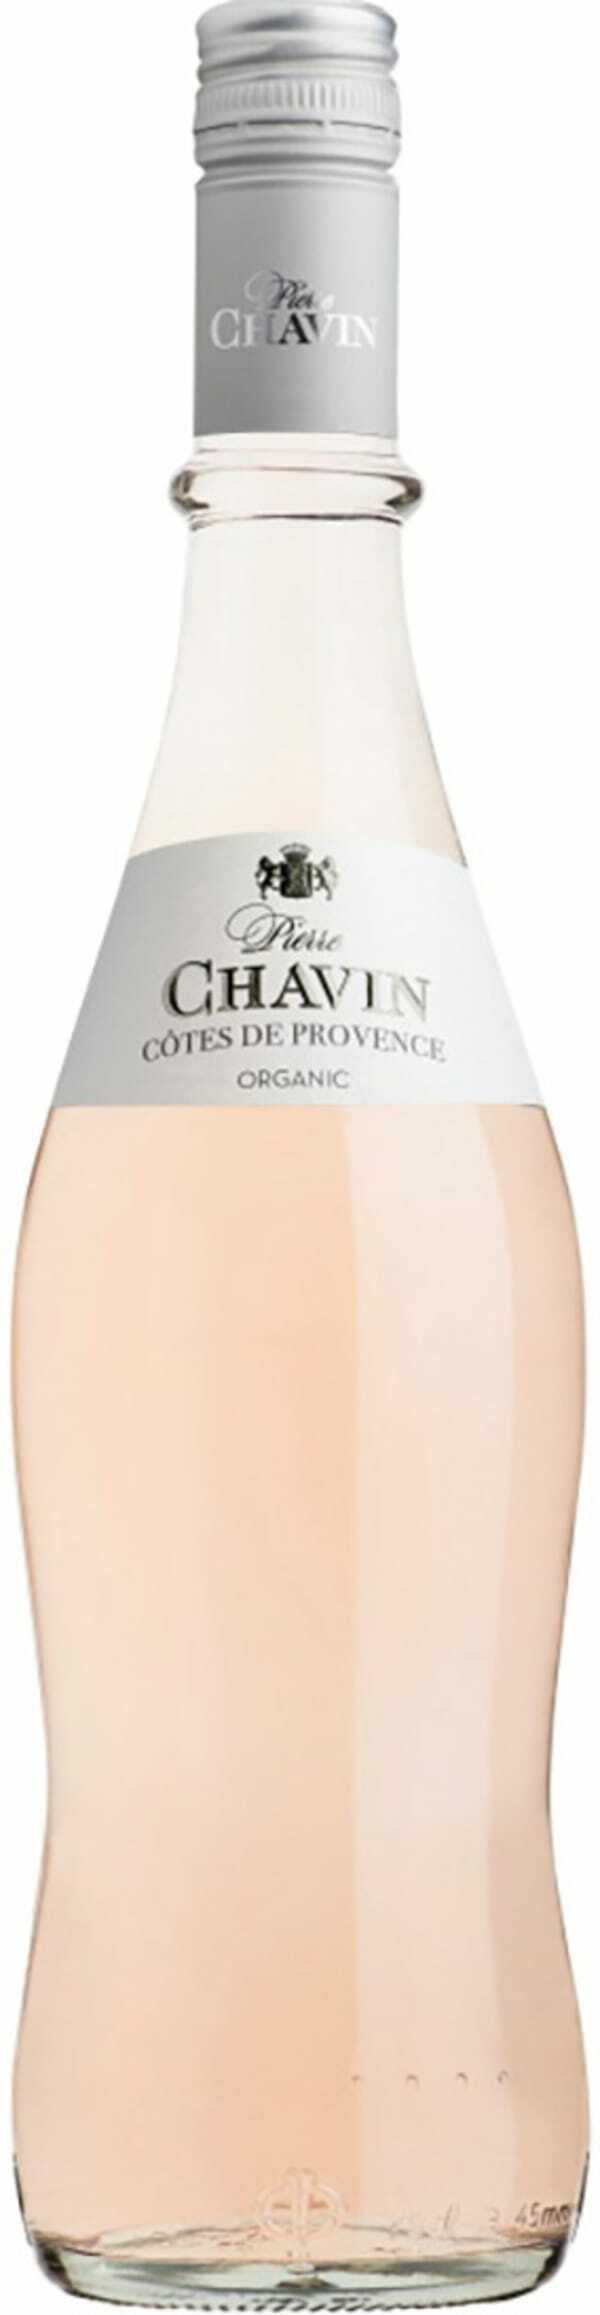 Pierre Chavin Côtes de Provence Organic 2020